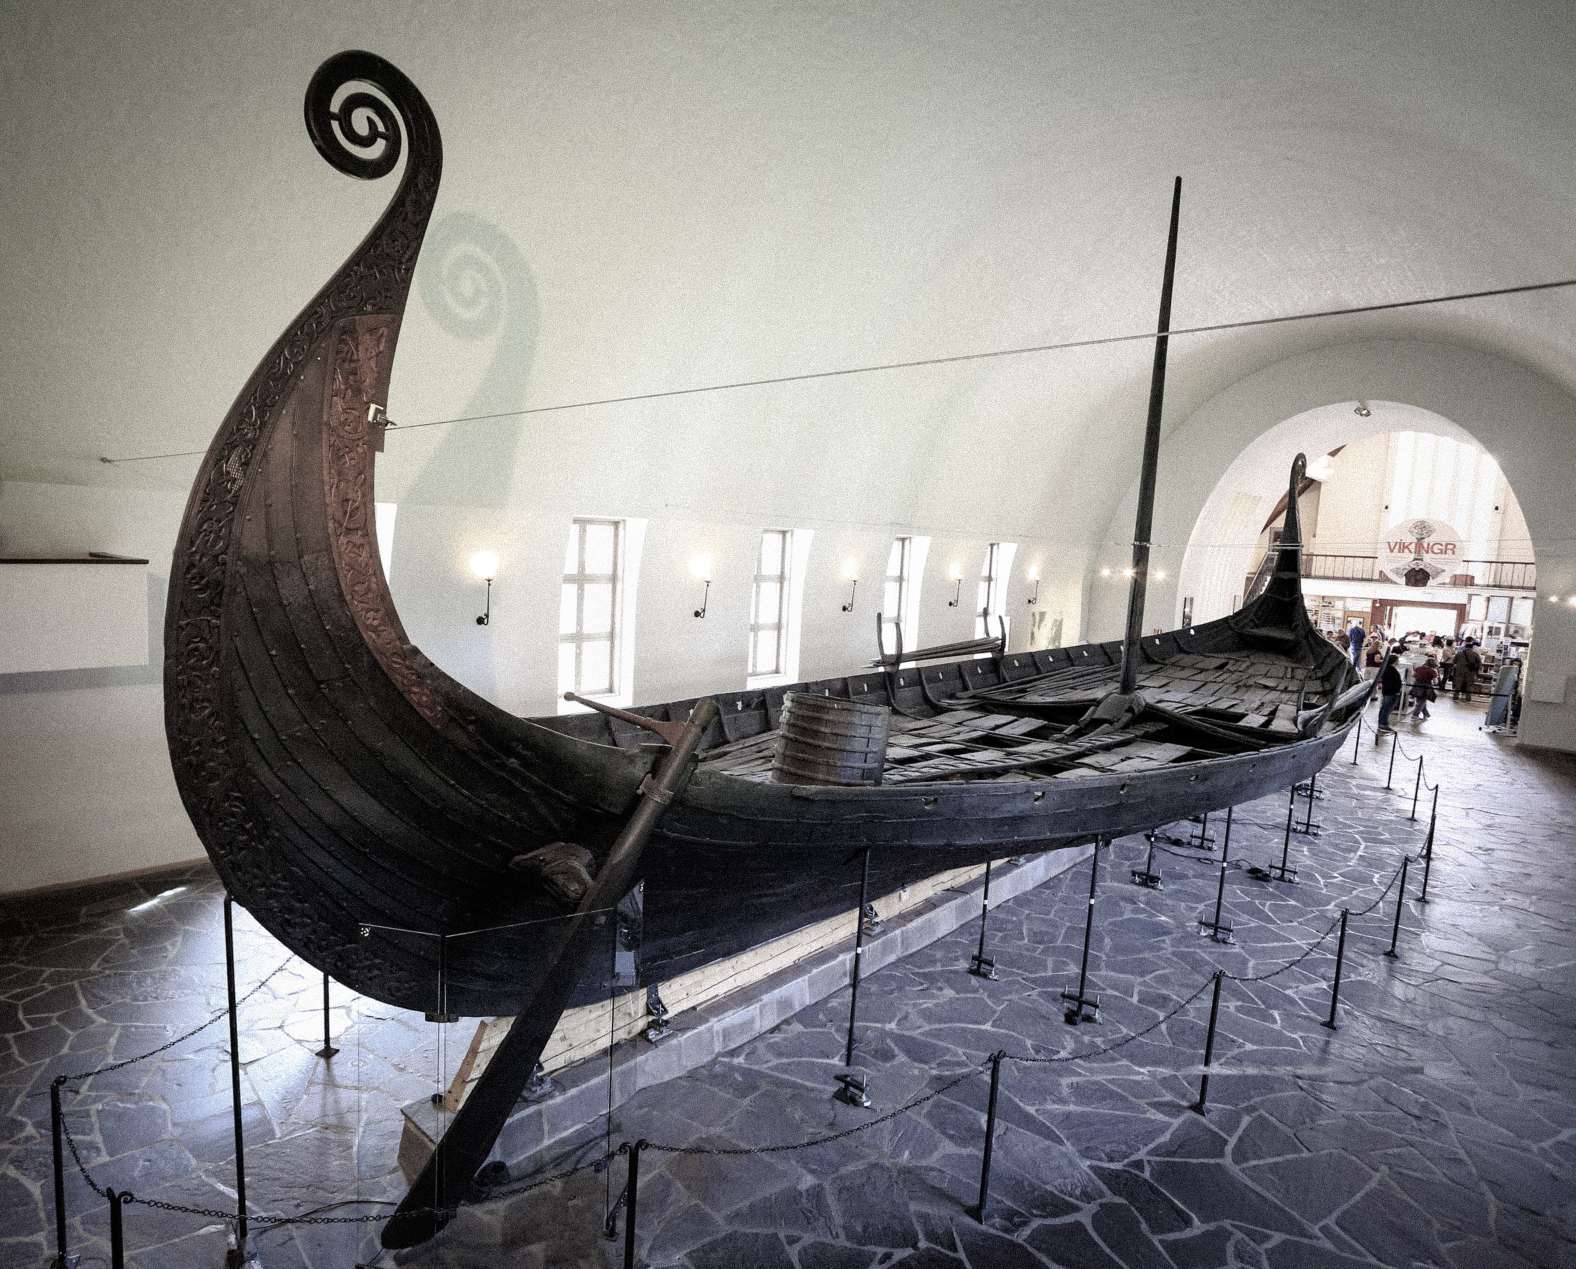 Loď Vikingov v Múzeu vikingských lodí v meste Oslo v Nórsku. © Image Credit: Vlad Ghiea | Licencované od DreamsTime.com (Editorial Photo Stock, ID: 155282591)